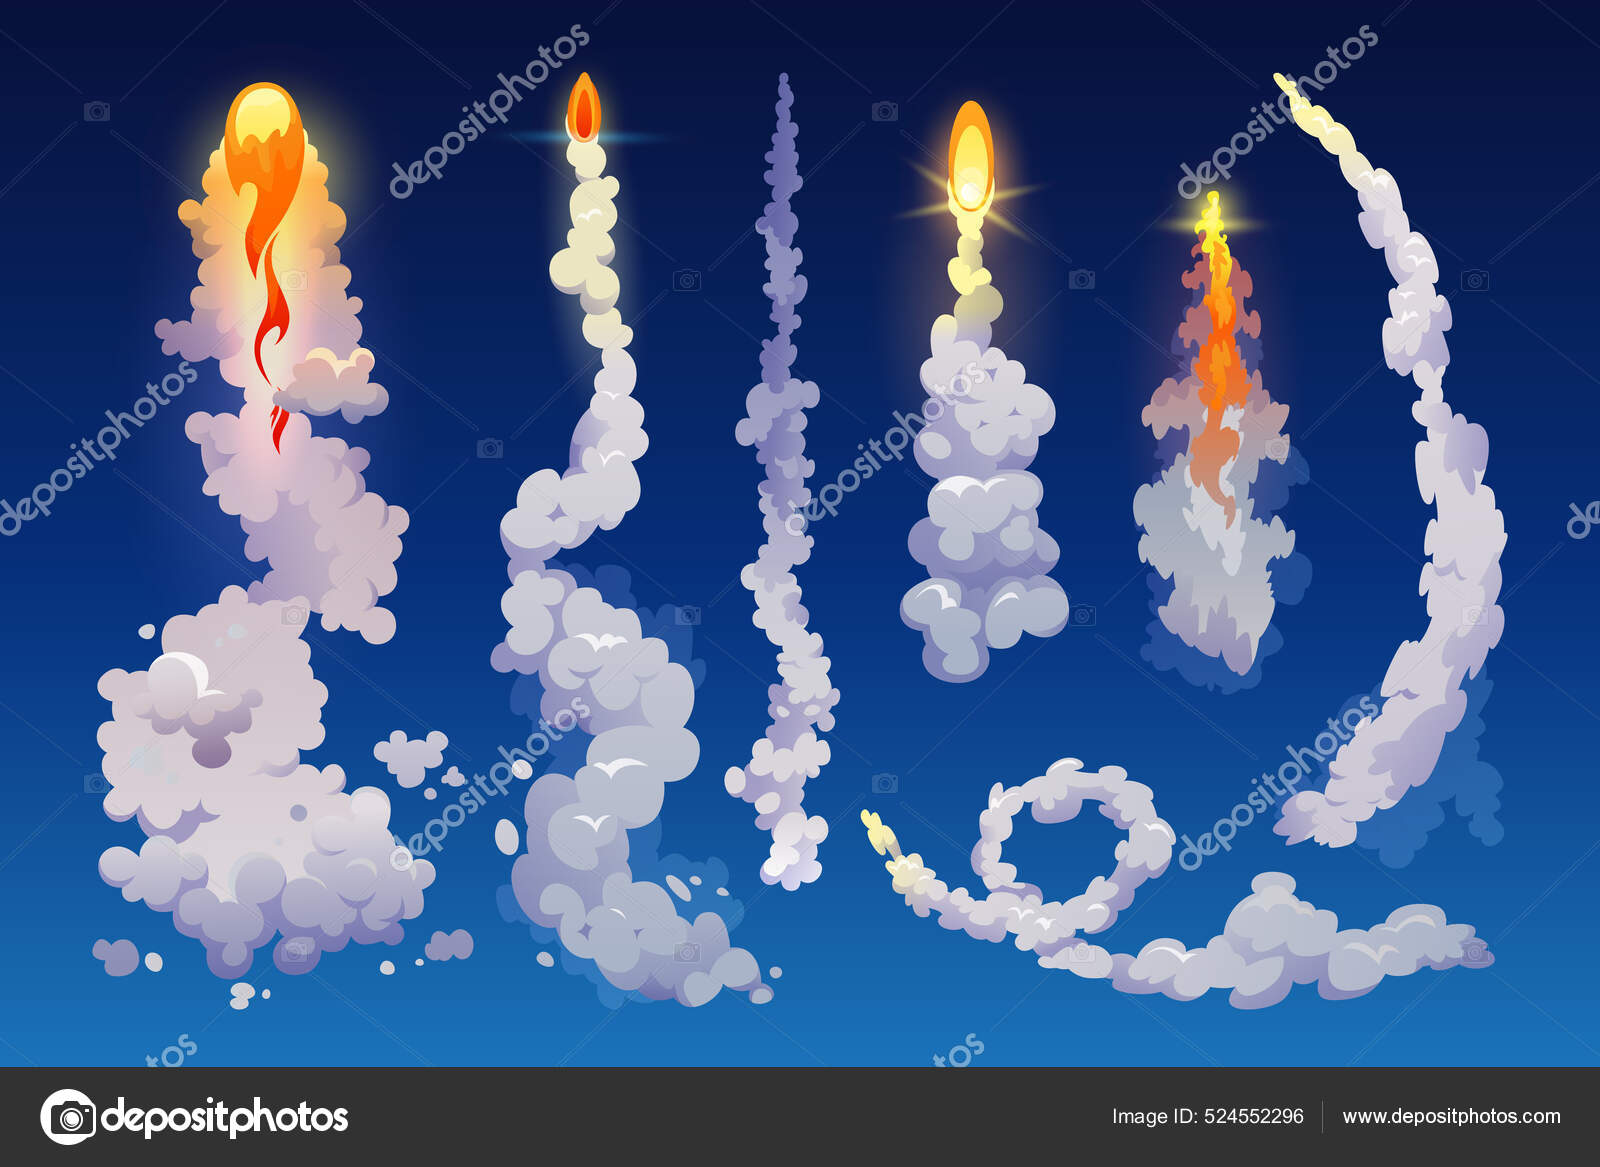 Trilha de fumaça de lançamento de foguete espacial com vetor de fogo plano  isolado ou explosão de decolagem de nave espacial a jato 3d spray de ar com  chama trilha realista de